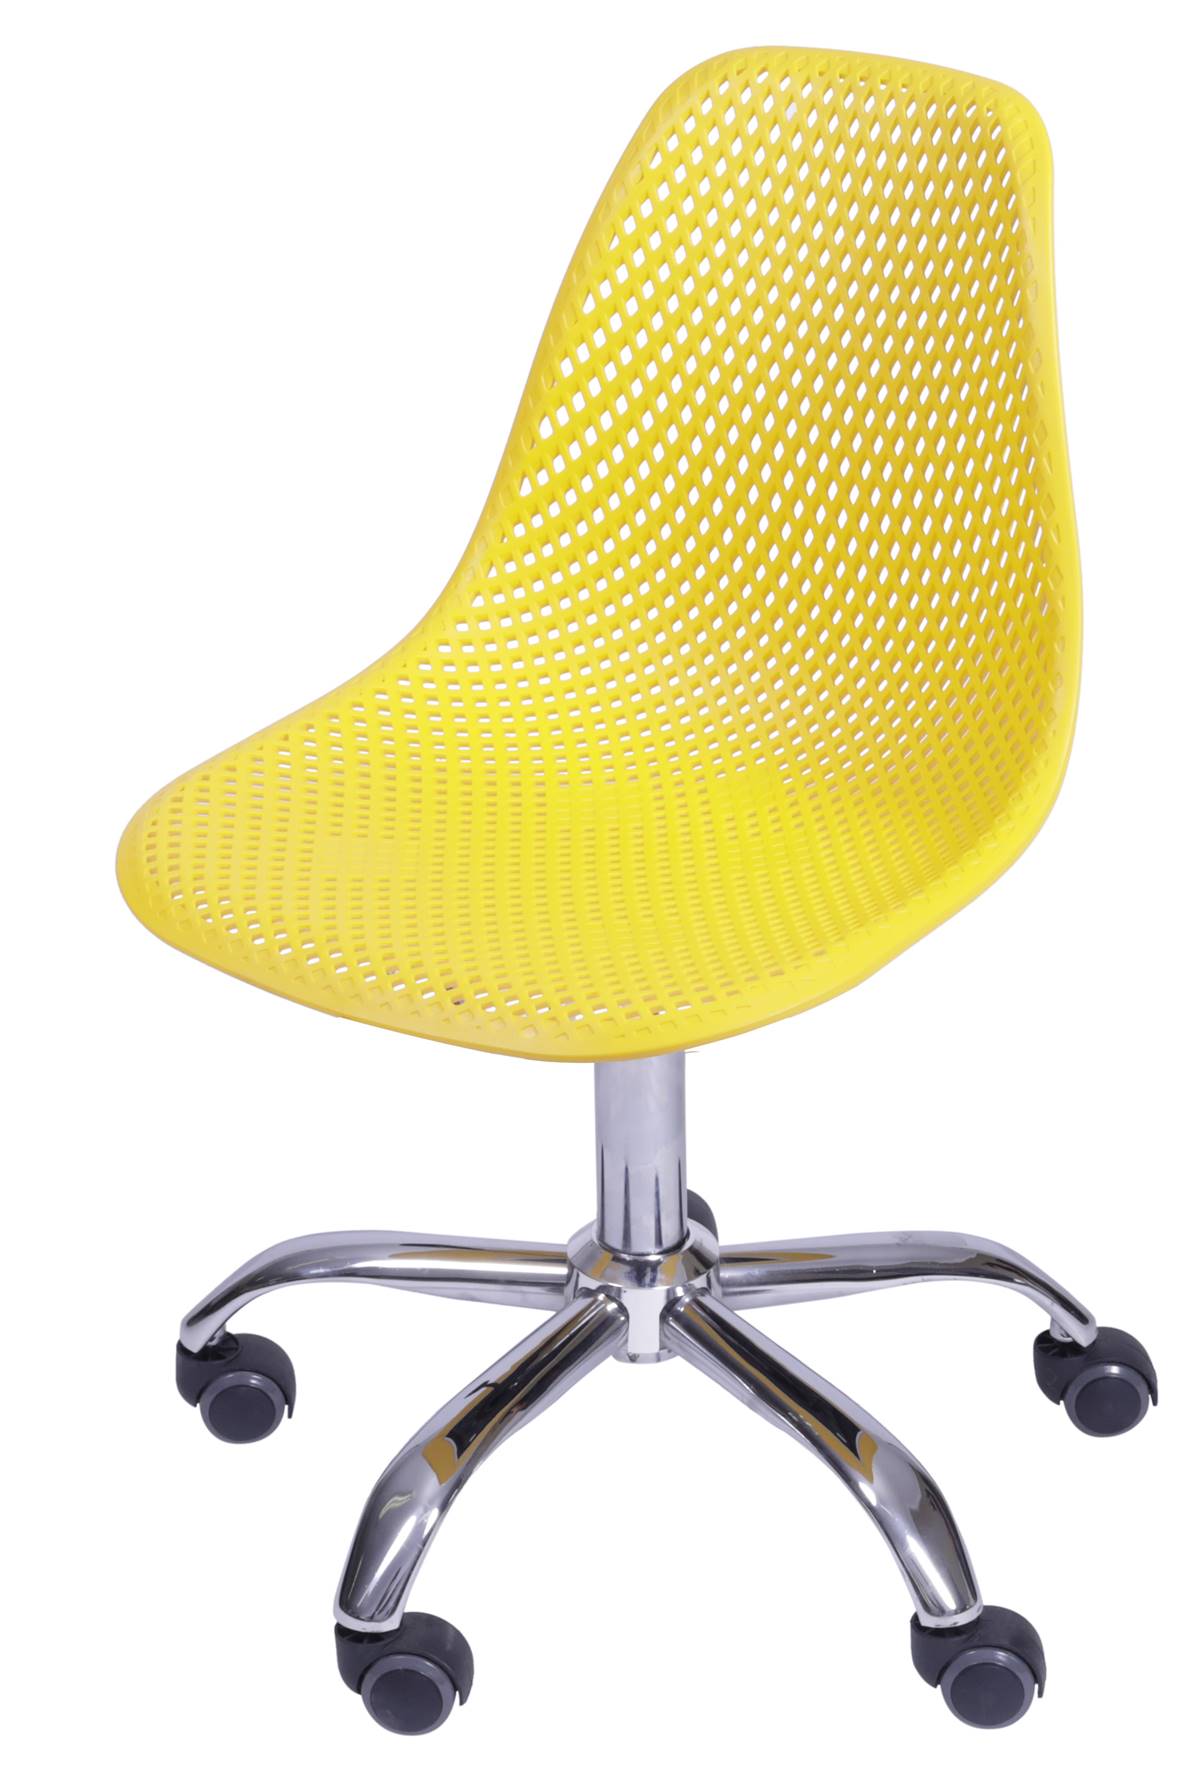 Cadeira Eames Furadinha cor Amarela com Base Rodizio - 54704